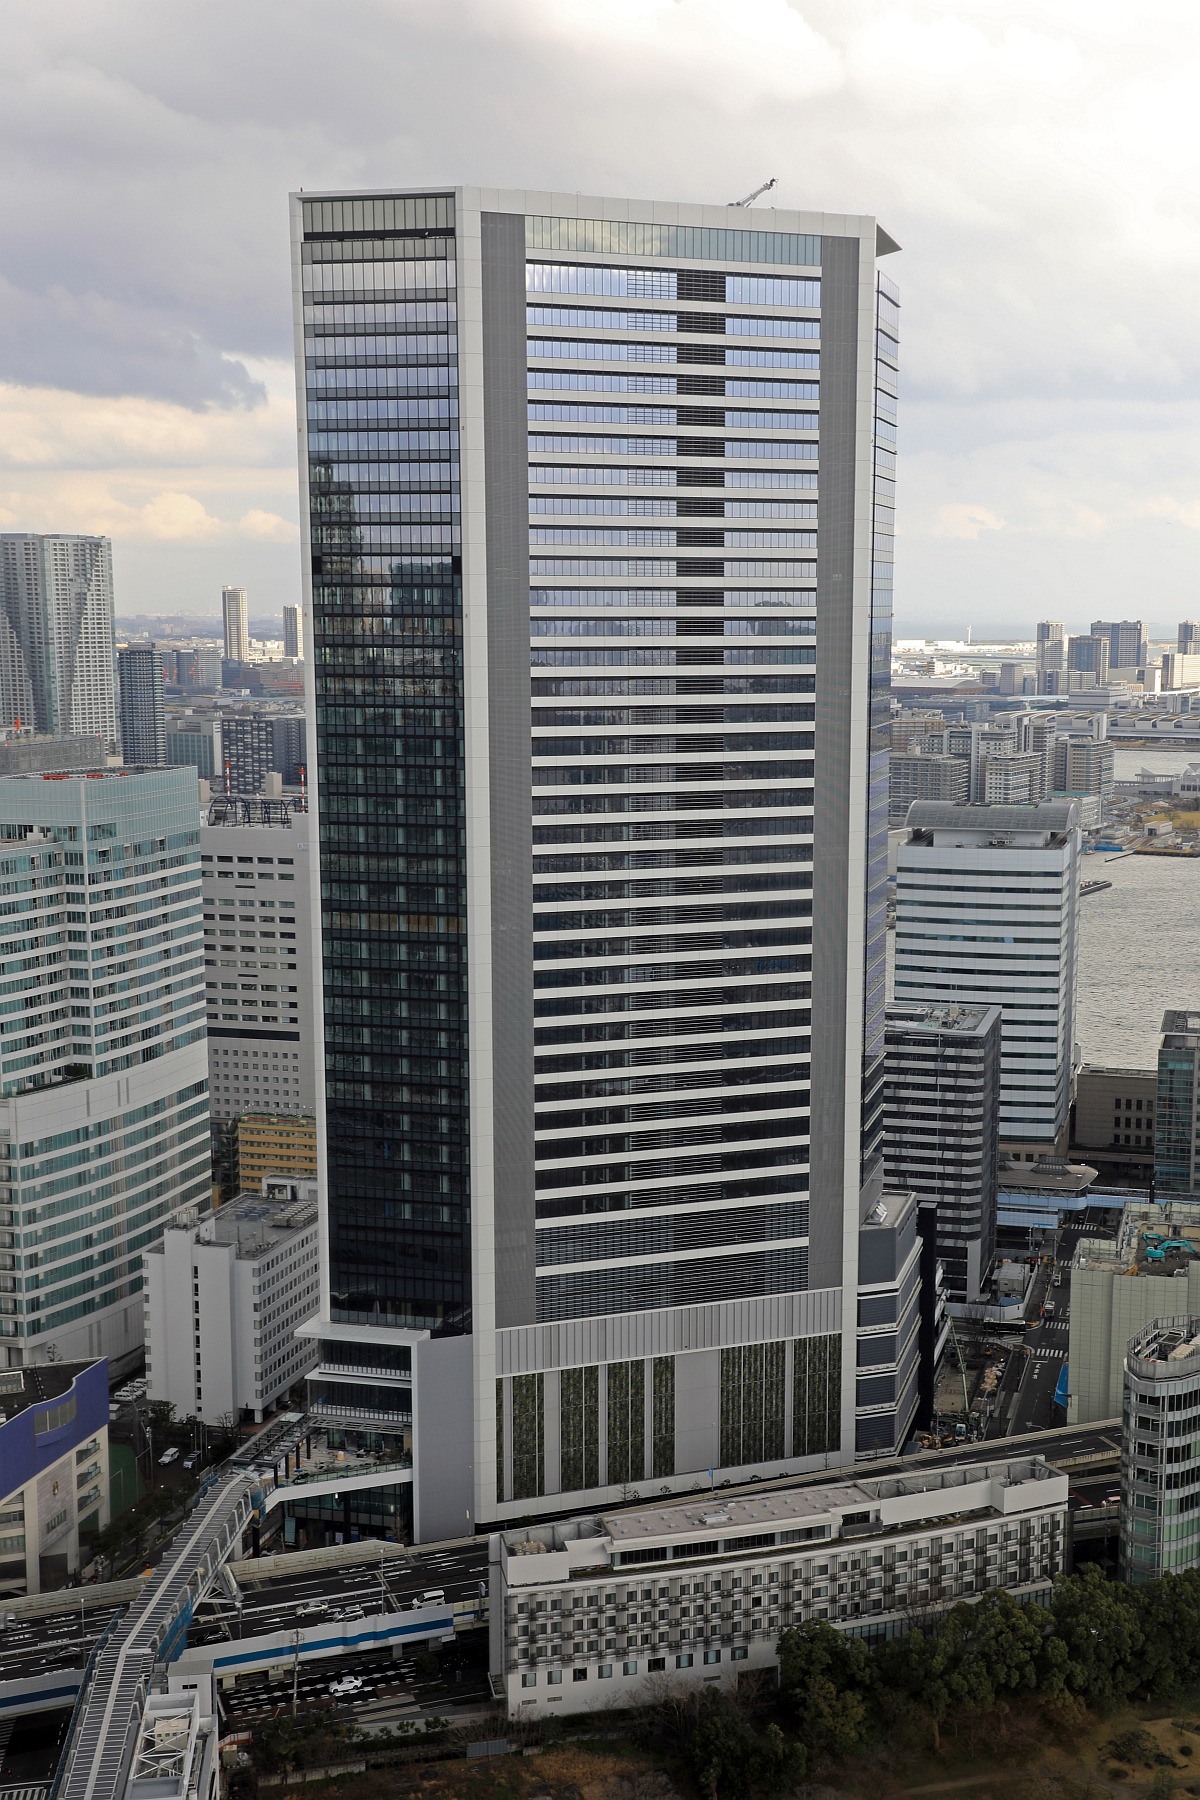 ソフトバンクの新本社 高さ約9m 東京ポートシティ竹芝オフィスタワー の建設状況 2 22 超高層マンション 超高層ビル